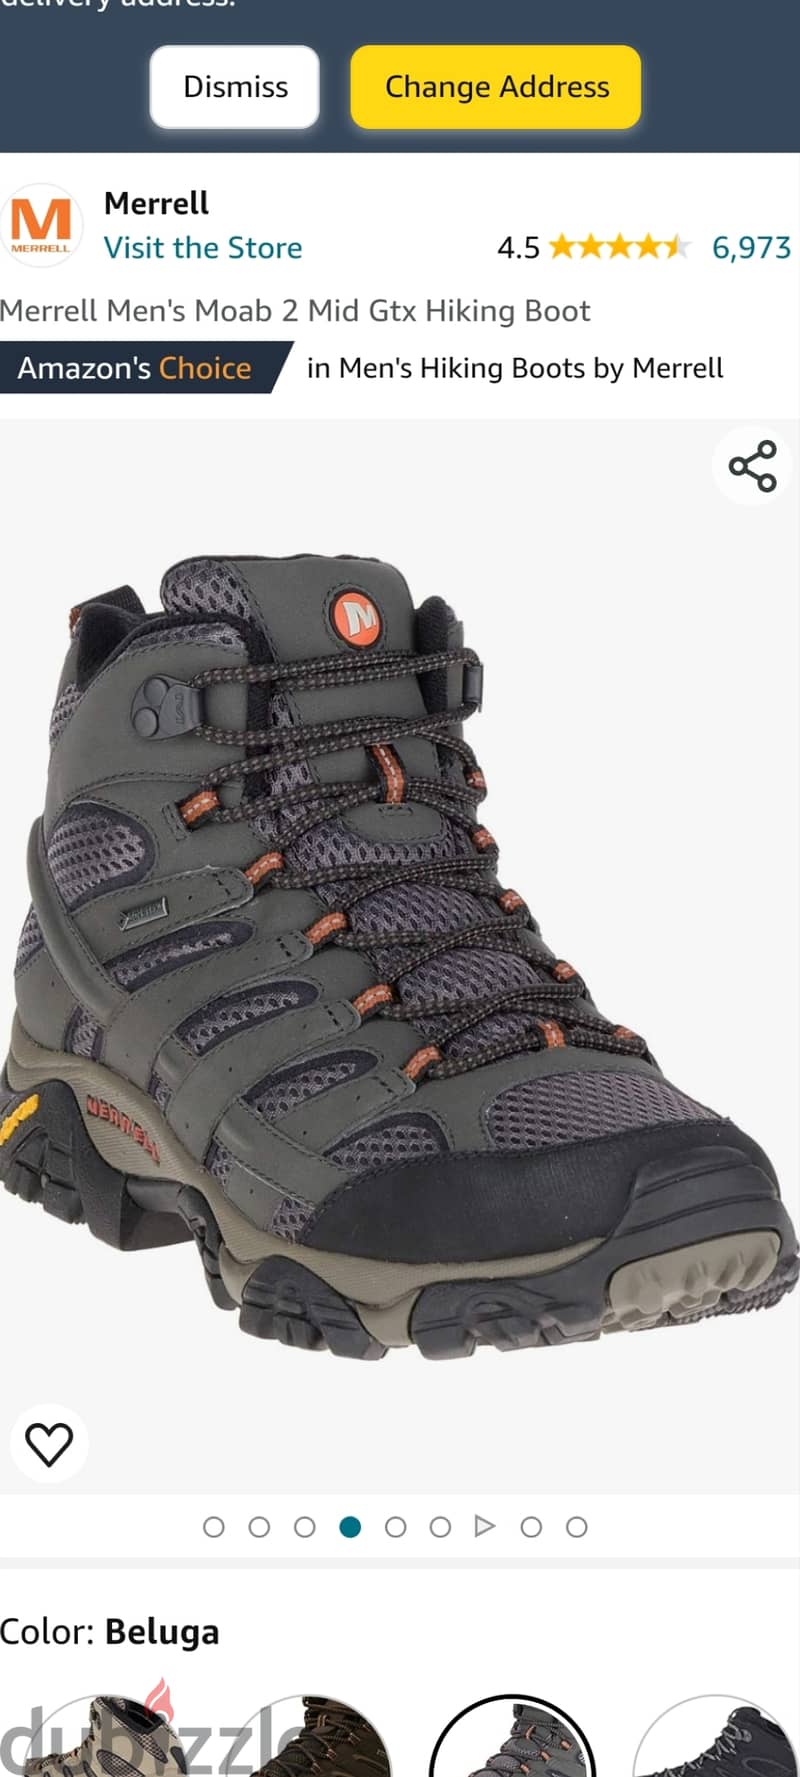 Merrell hiking shoes goretex waterproof 3